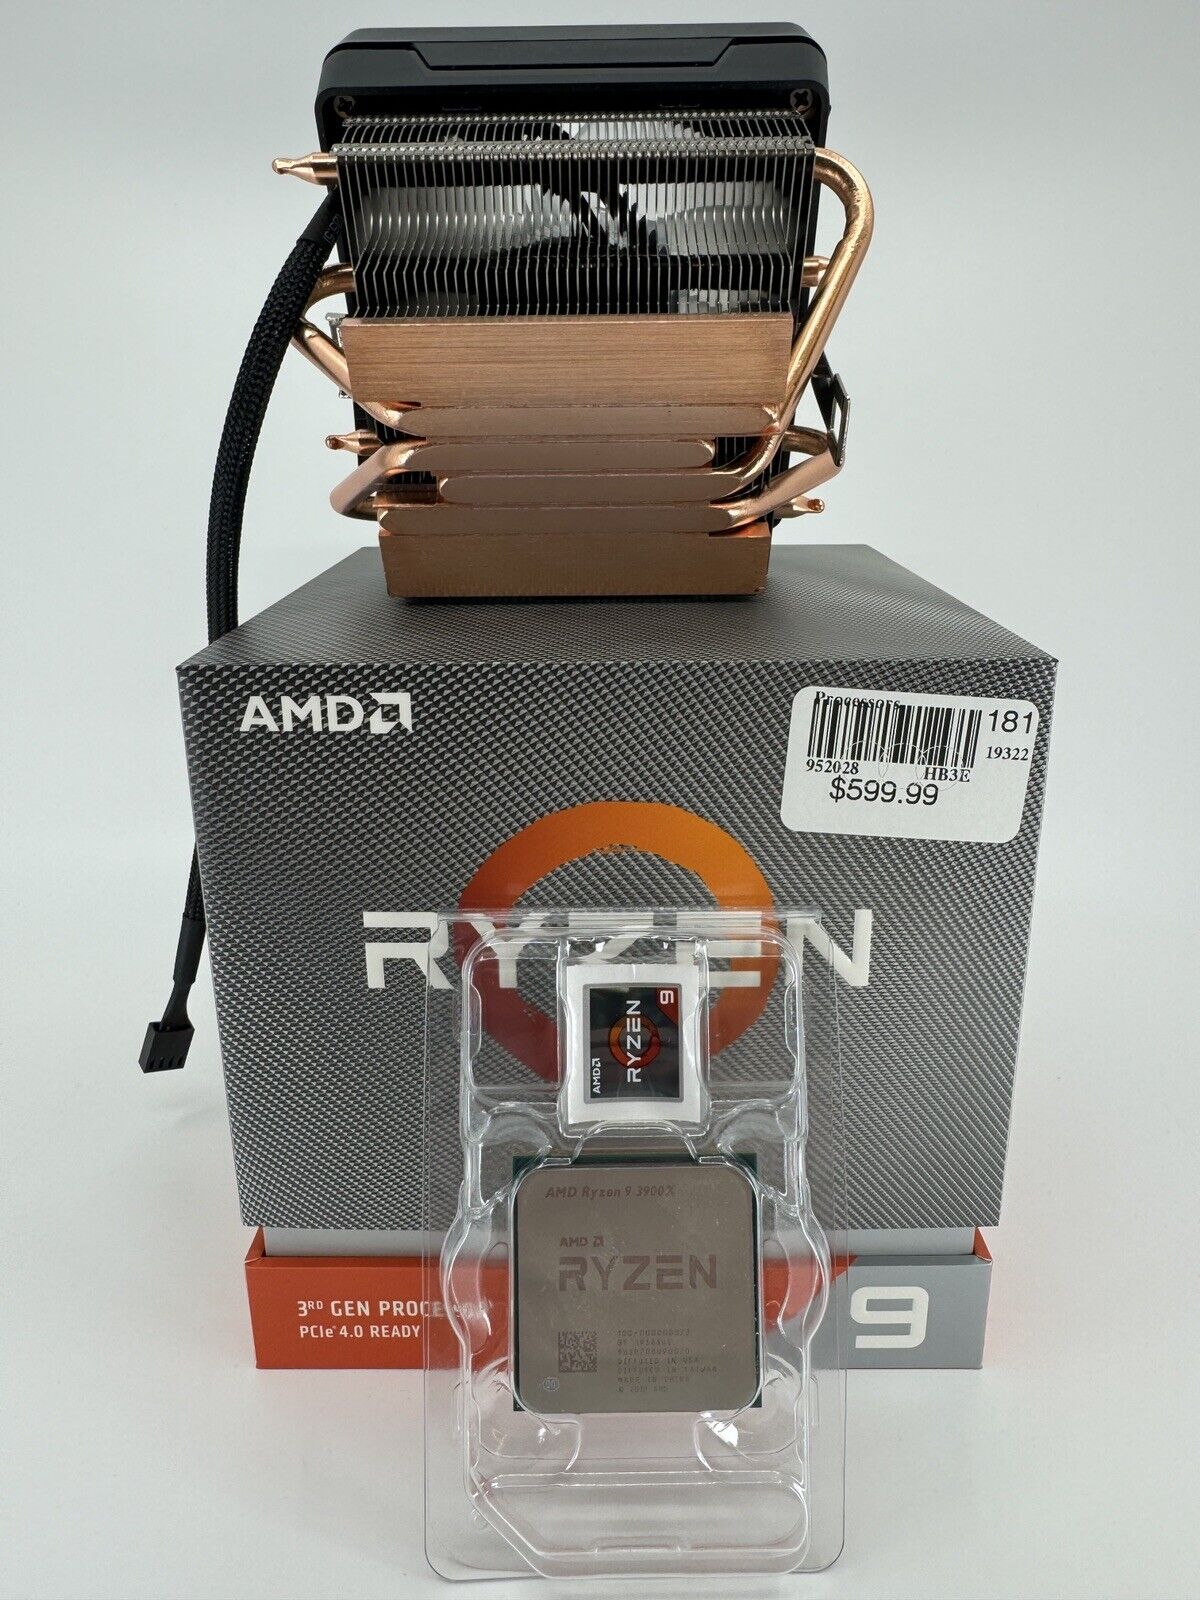 AMD Ryzen 9 3900X Processor (3.8 GHz, 12-Cores, Socket AM4) Boxed - Fan Included